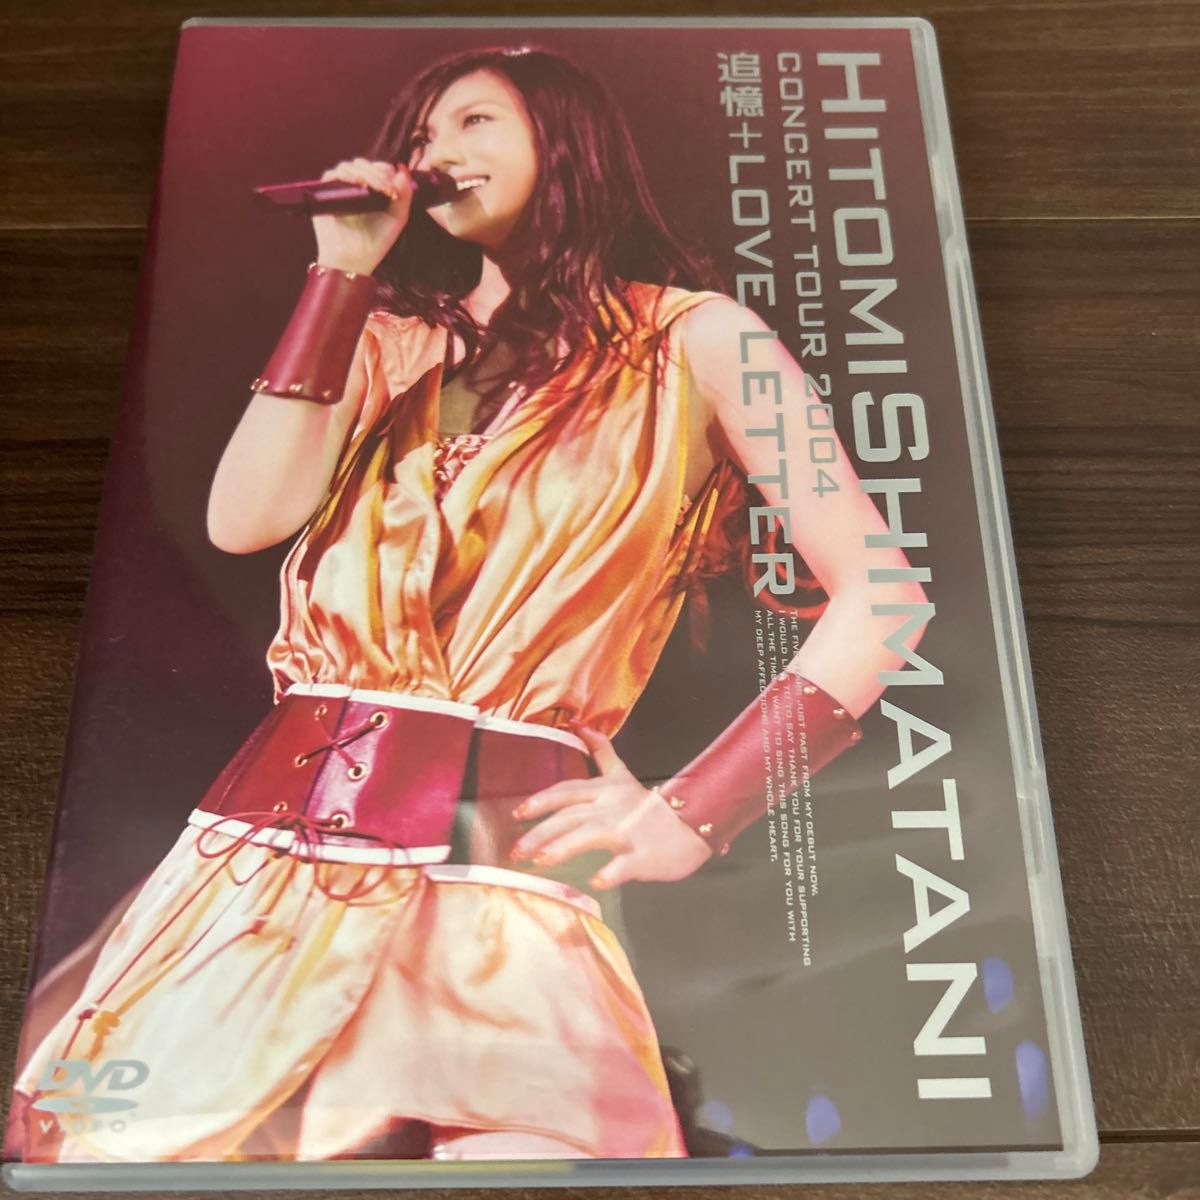 HITOMI SHIMATANI CONCERT TOUR 2004-追憶+LOVE LETTER- DVD